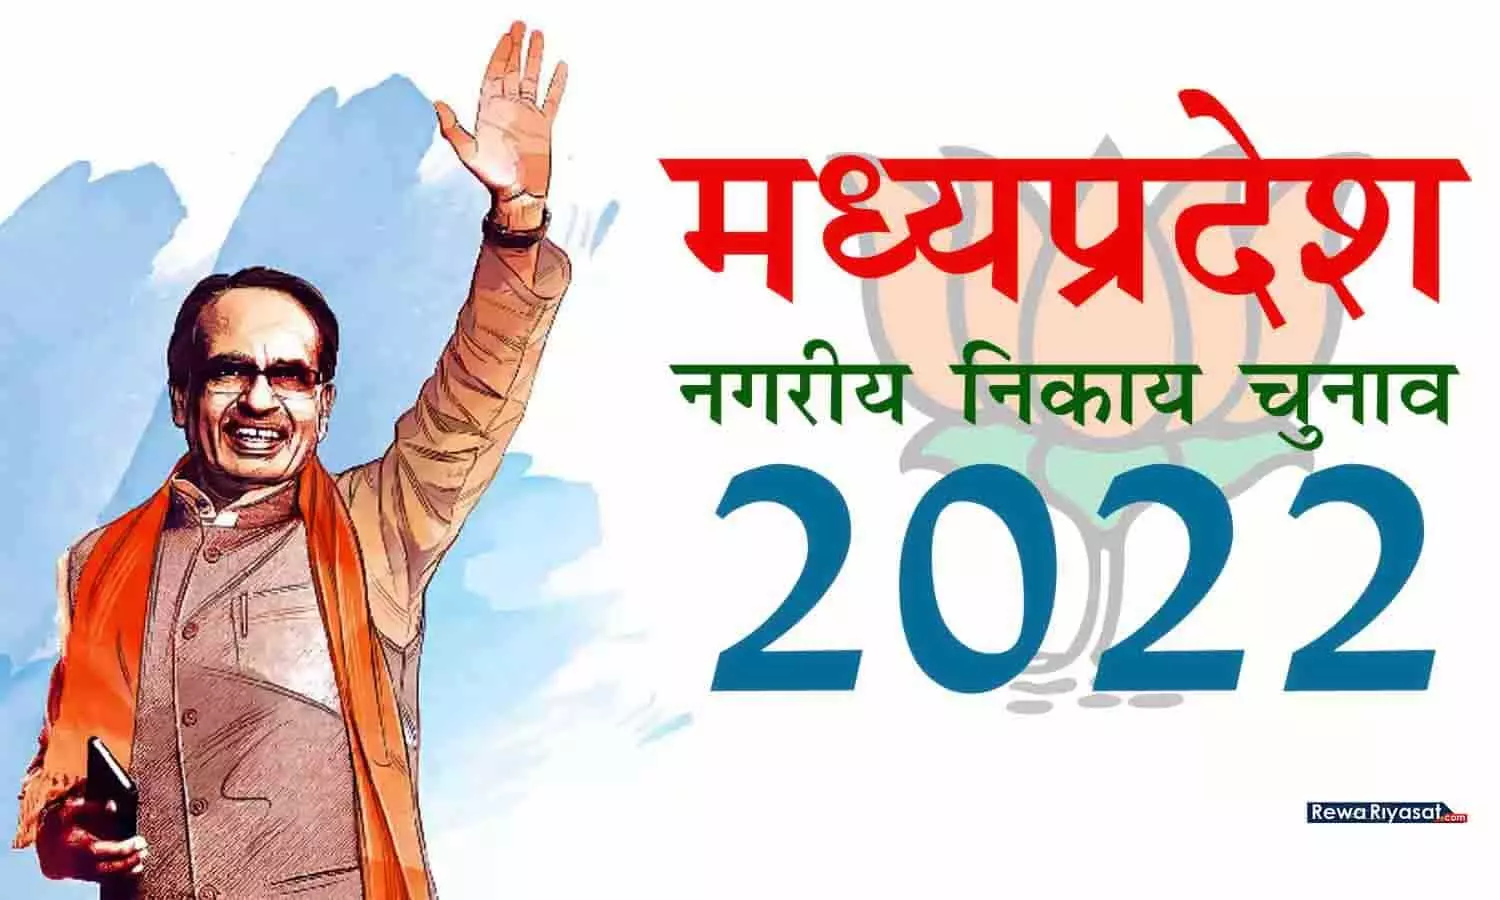 MP BJP Mayor Candidate List 2022 Live: रीवा से प्रबोध व्यास तो भोपाल से मालती, जबलपुर में जामदार समेत 13 महापौर प्रत्याशियों की लिस्ट जारी...